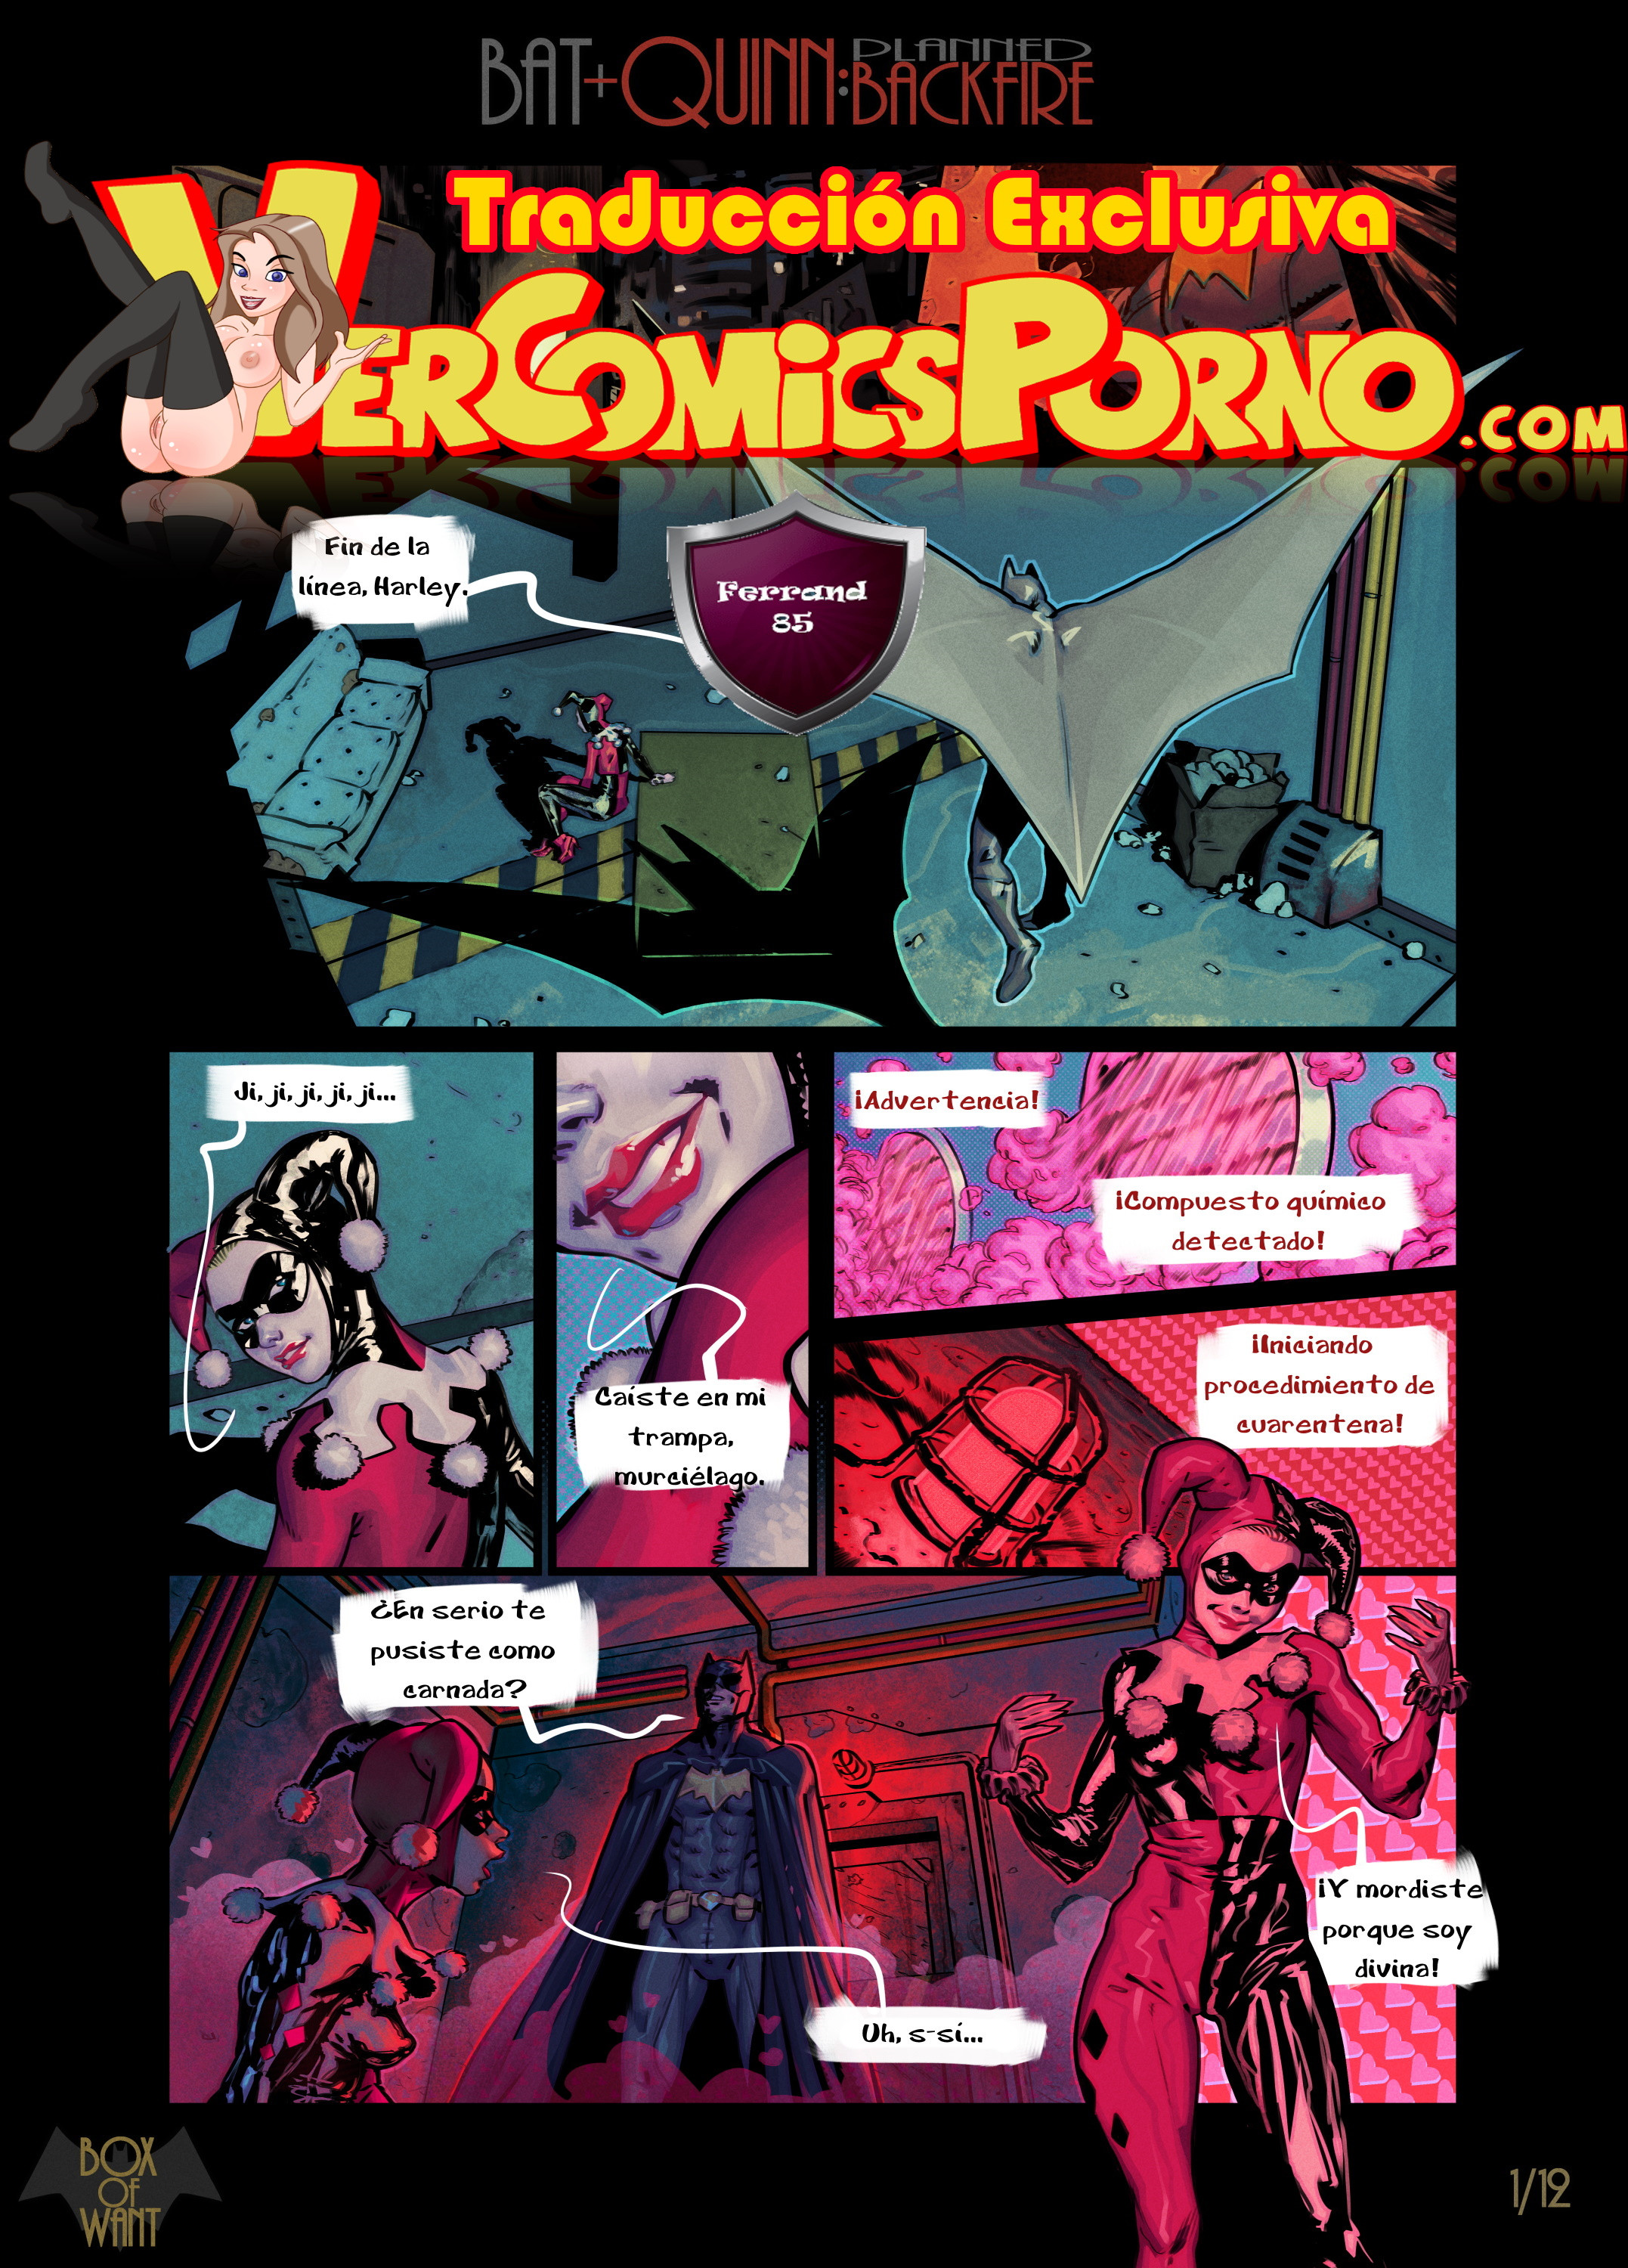 2154px x 3000px - Batman y Harley Quinn: Fantasias de una noche - Vercomicsporno